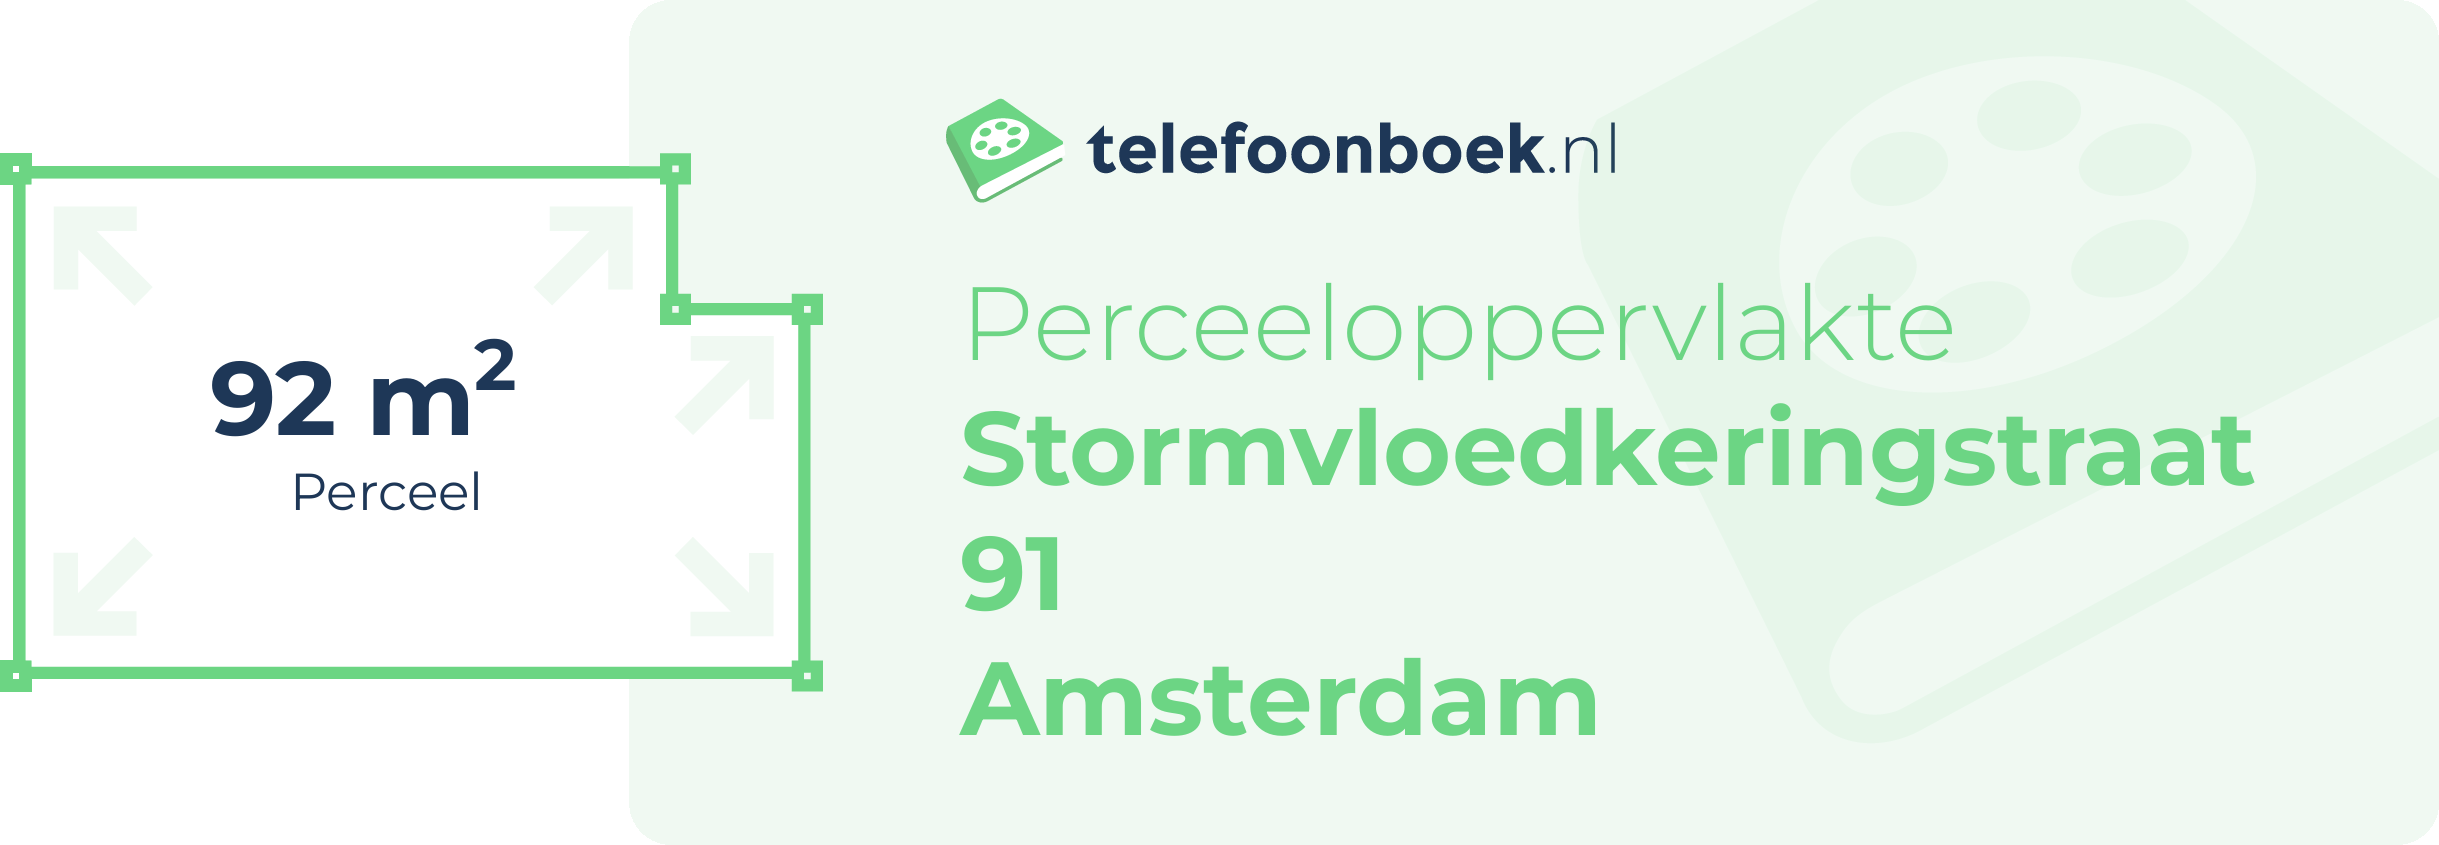 Perceeloppervlakte Stormvloedkeringstraat 91 Amsterdam